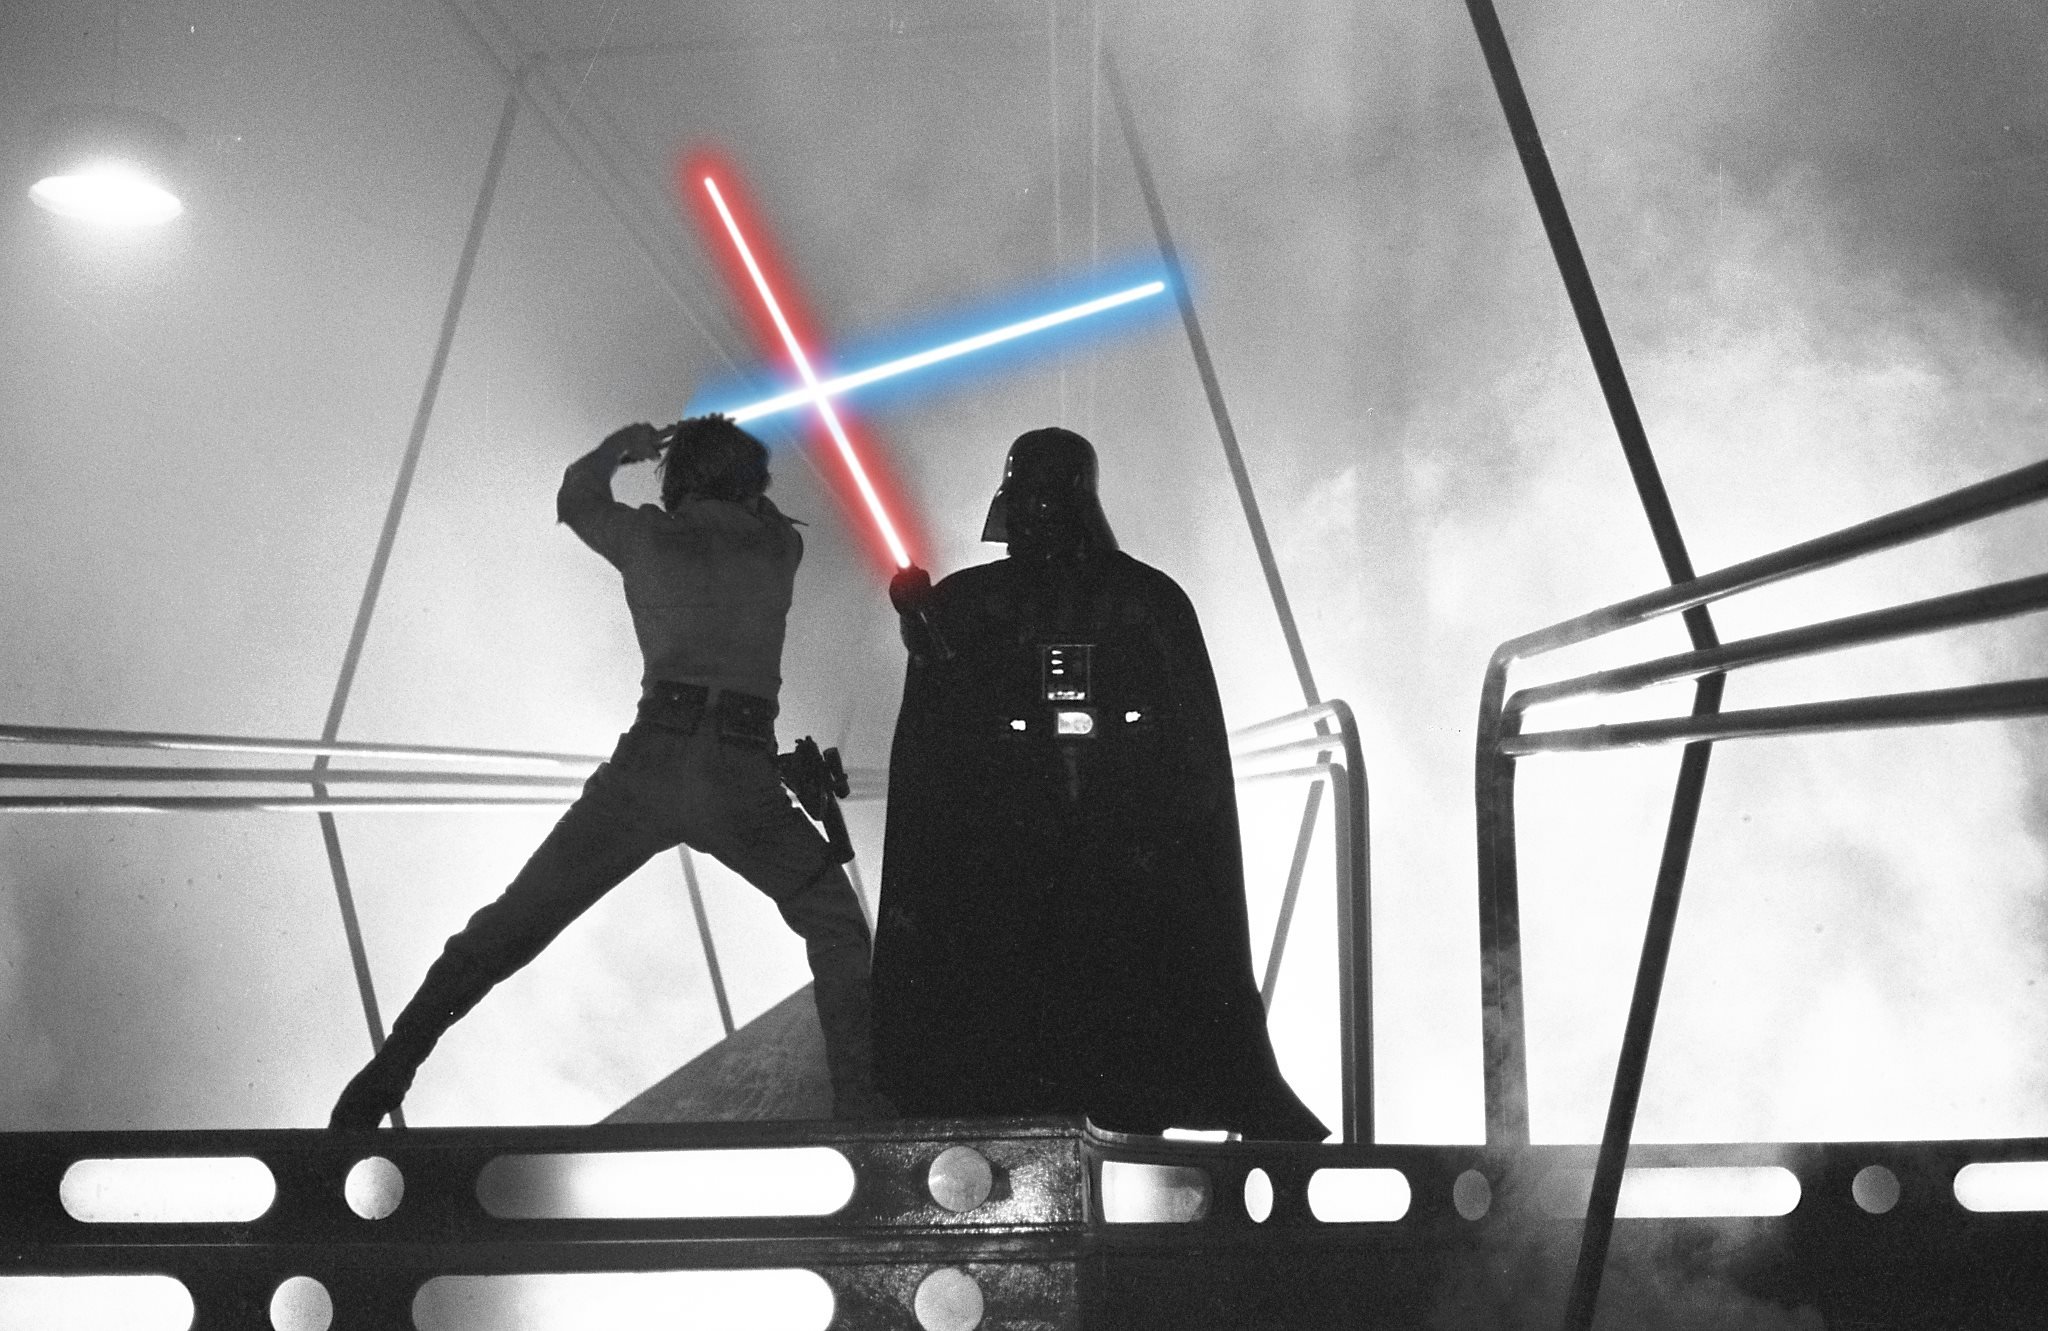 Darth Vader Lightsaber Luke Skywalker Star Wars Episode V The Empire Strikes Back Wallpaper Resolution 48x1331 Id Wallha Com